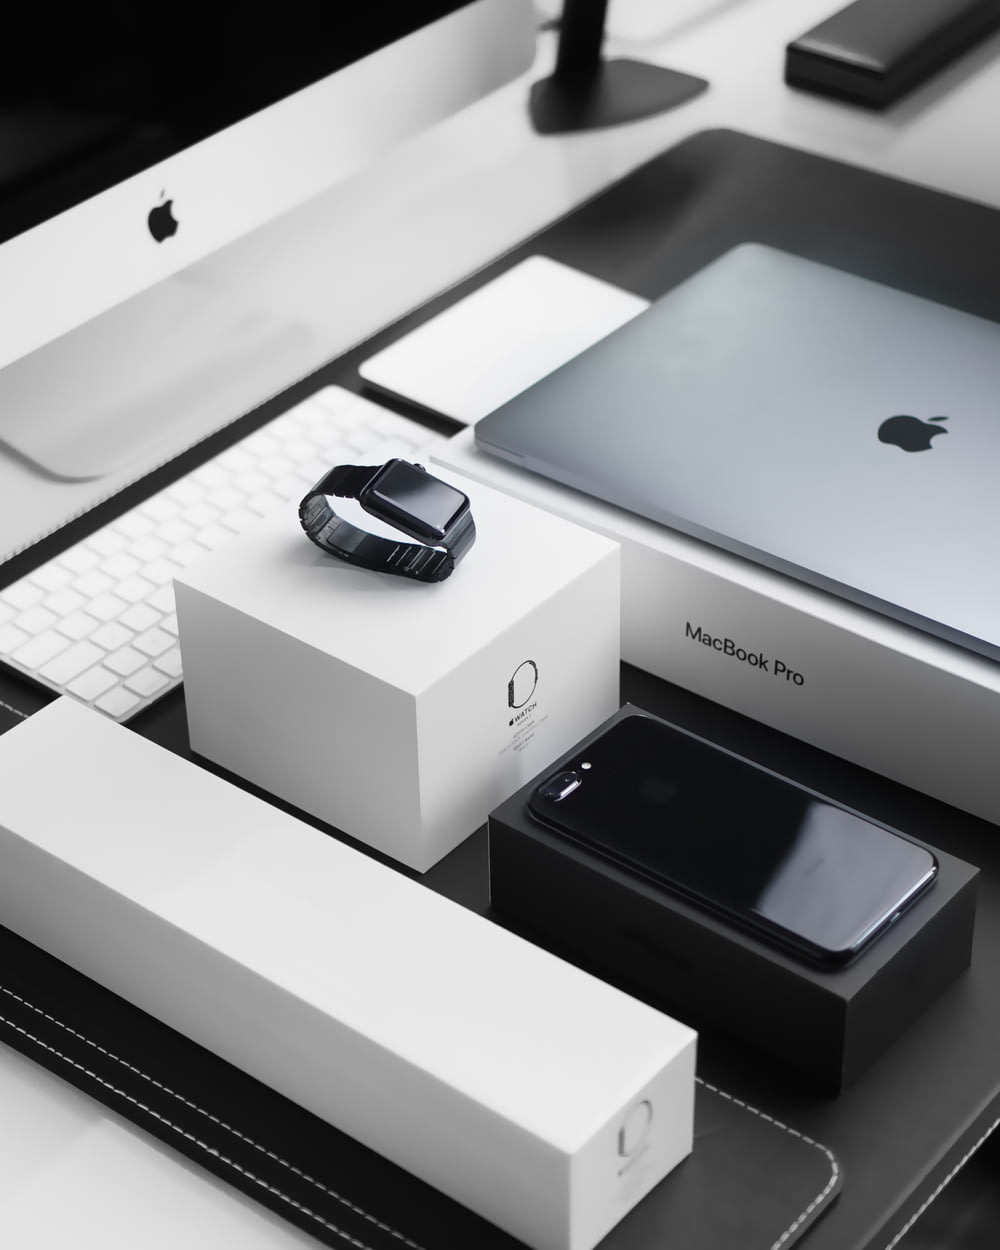 Capa preta Apple Watch, MacBook Pro prateado, iPhone 7 Plus preto a jato e iMac prateado com caixas correspondentes